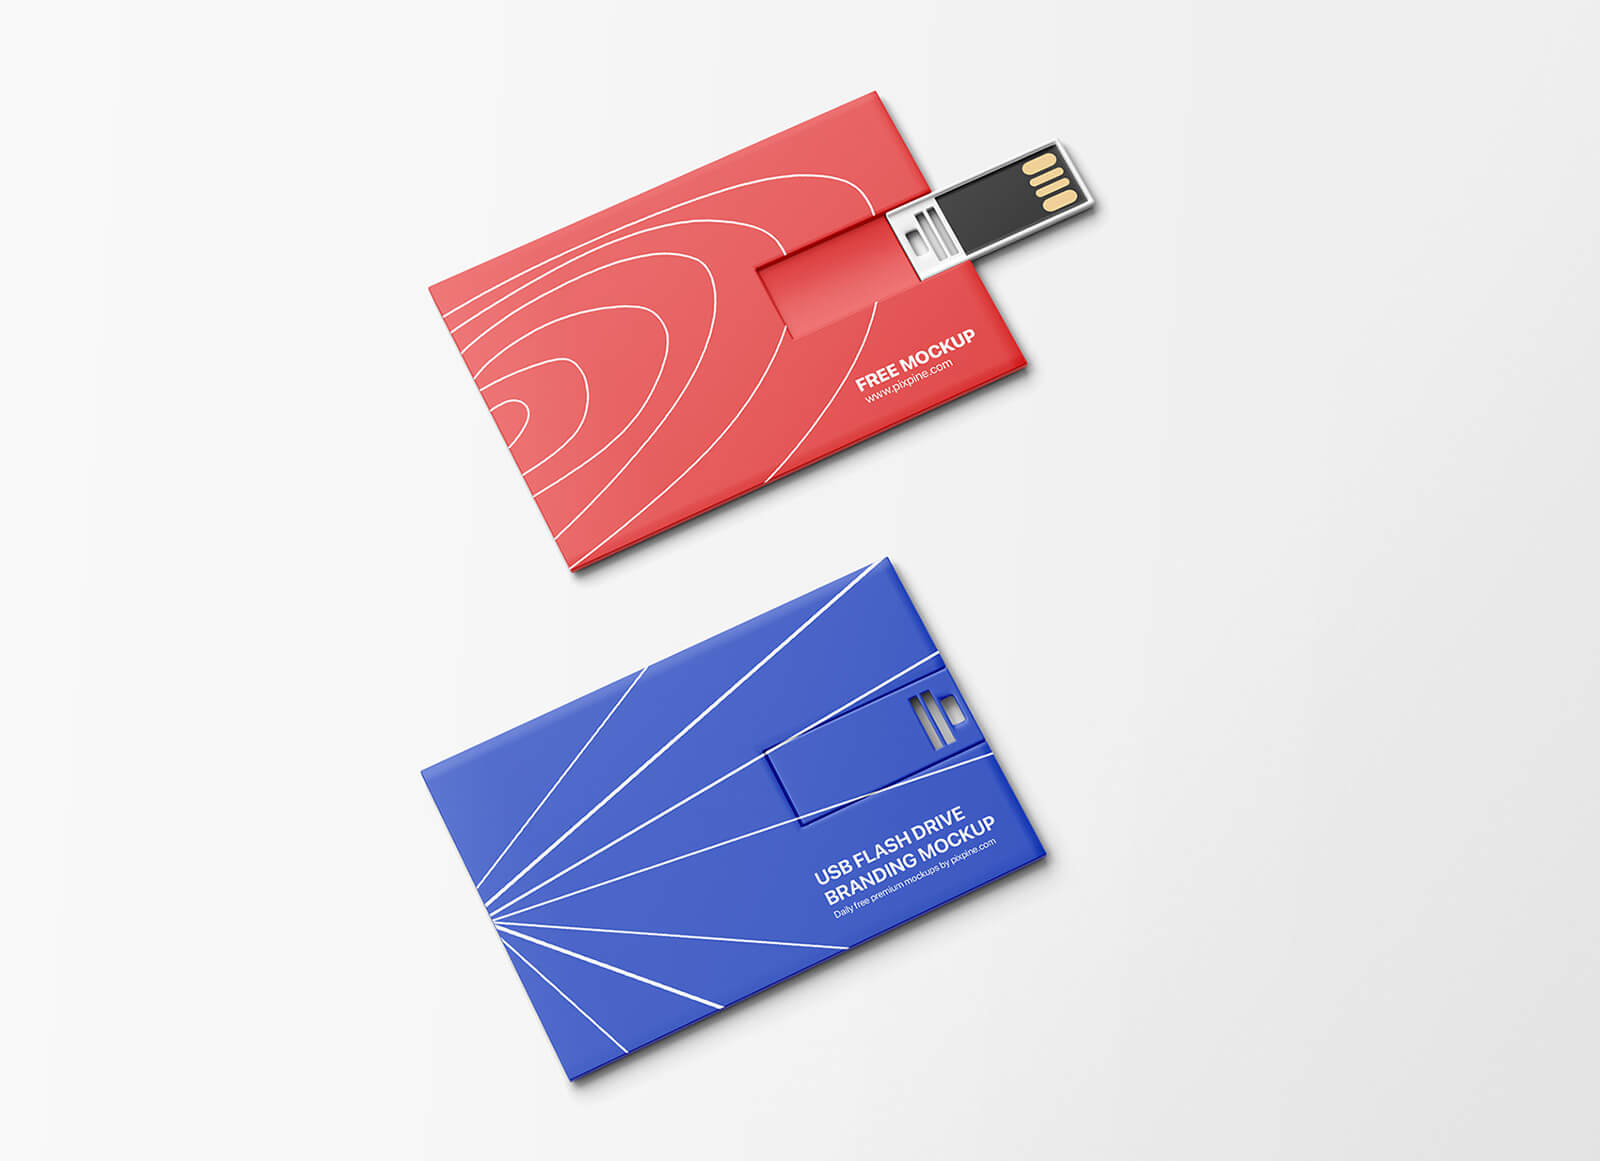 Free Wallet Card USB Flash Drive Mockup PSD